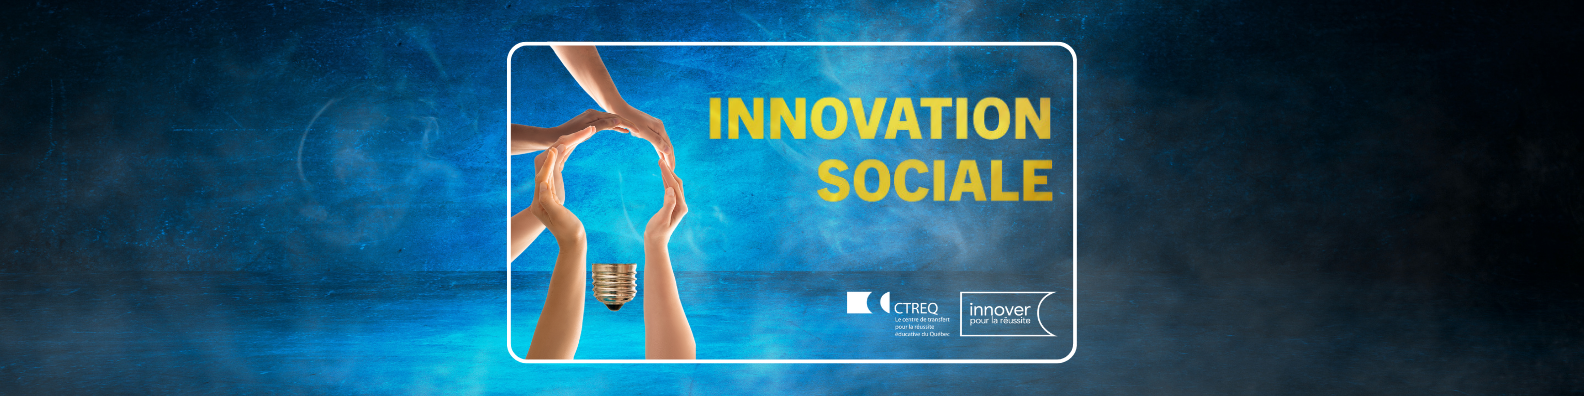 Thème : Innovation sociale